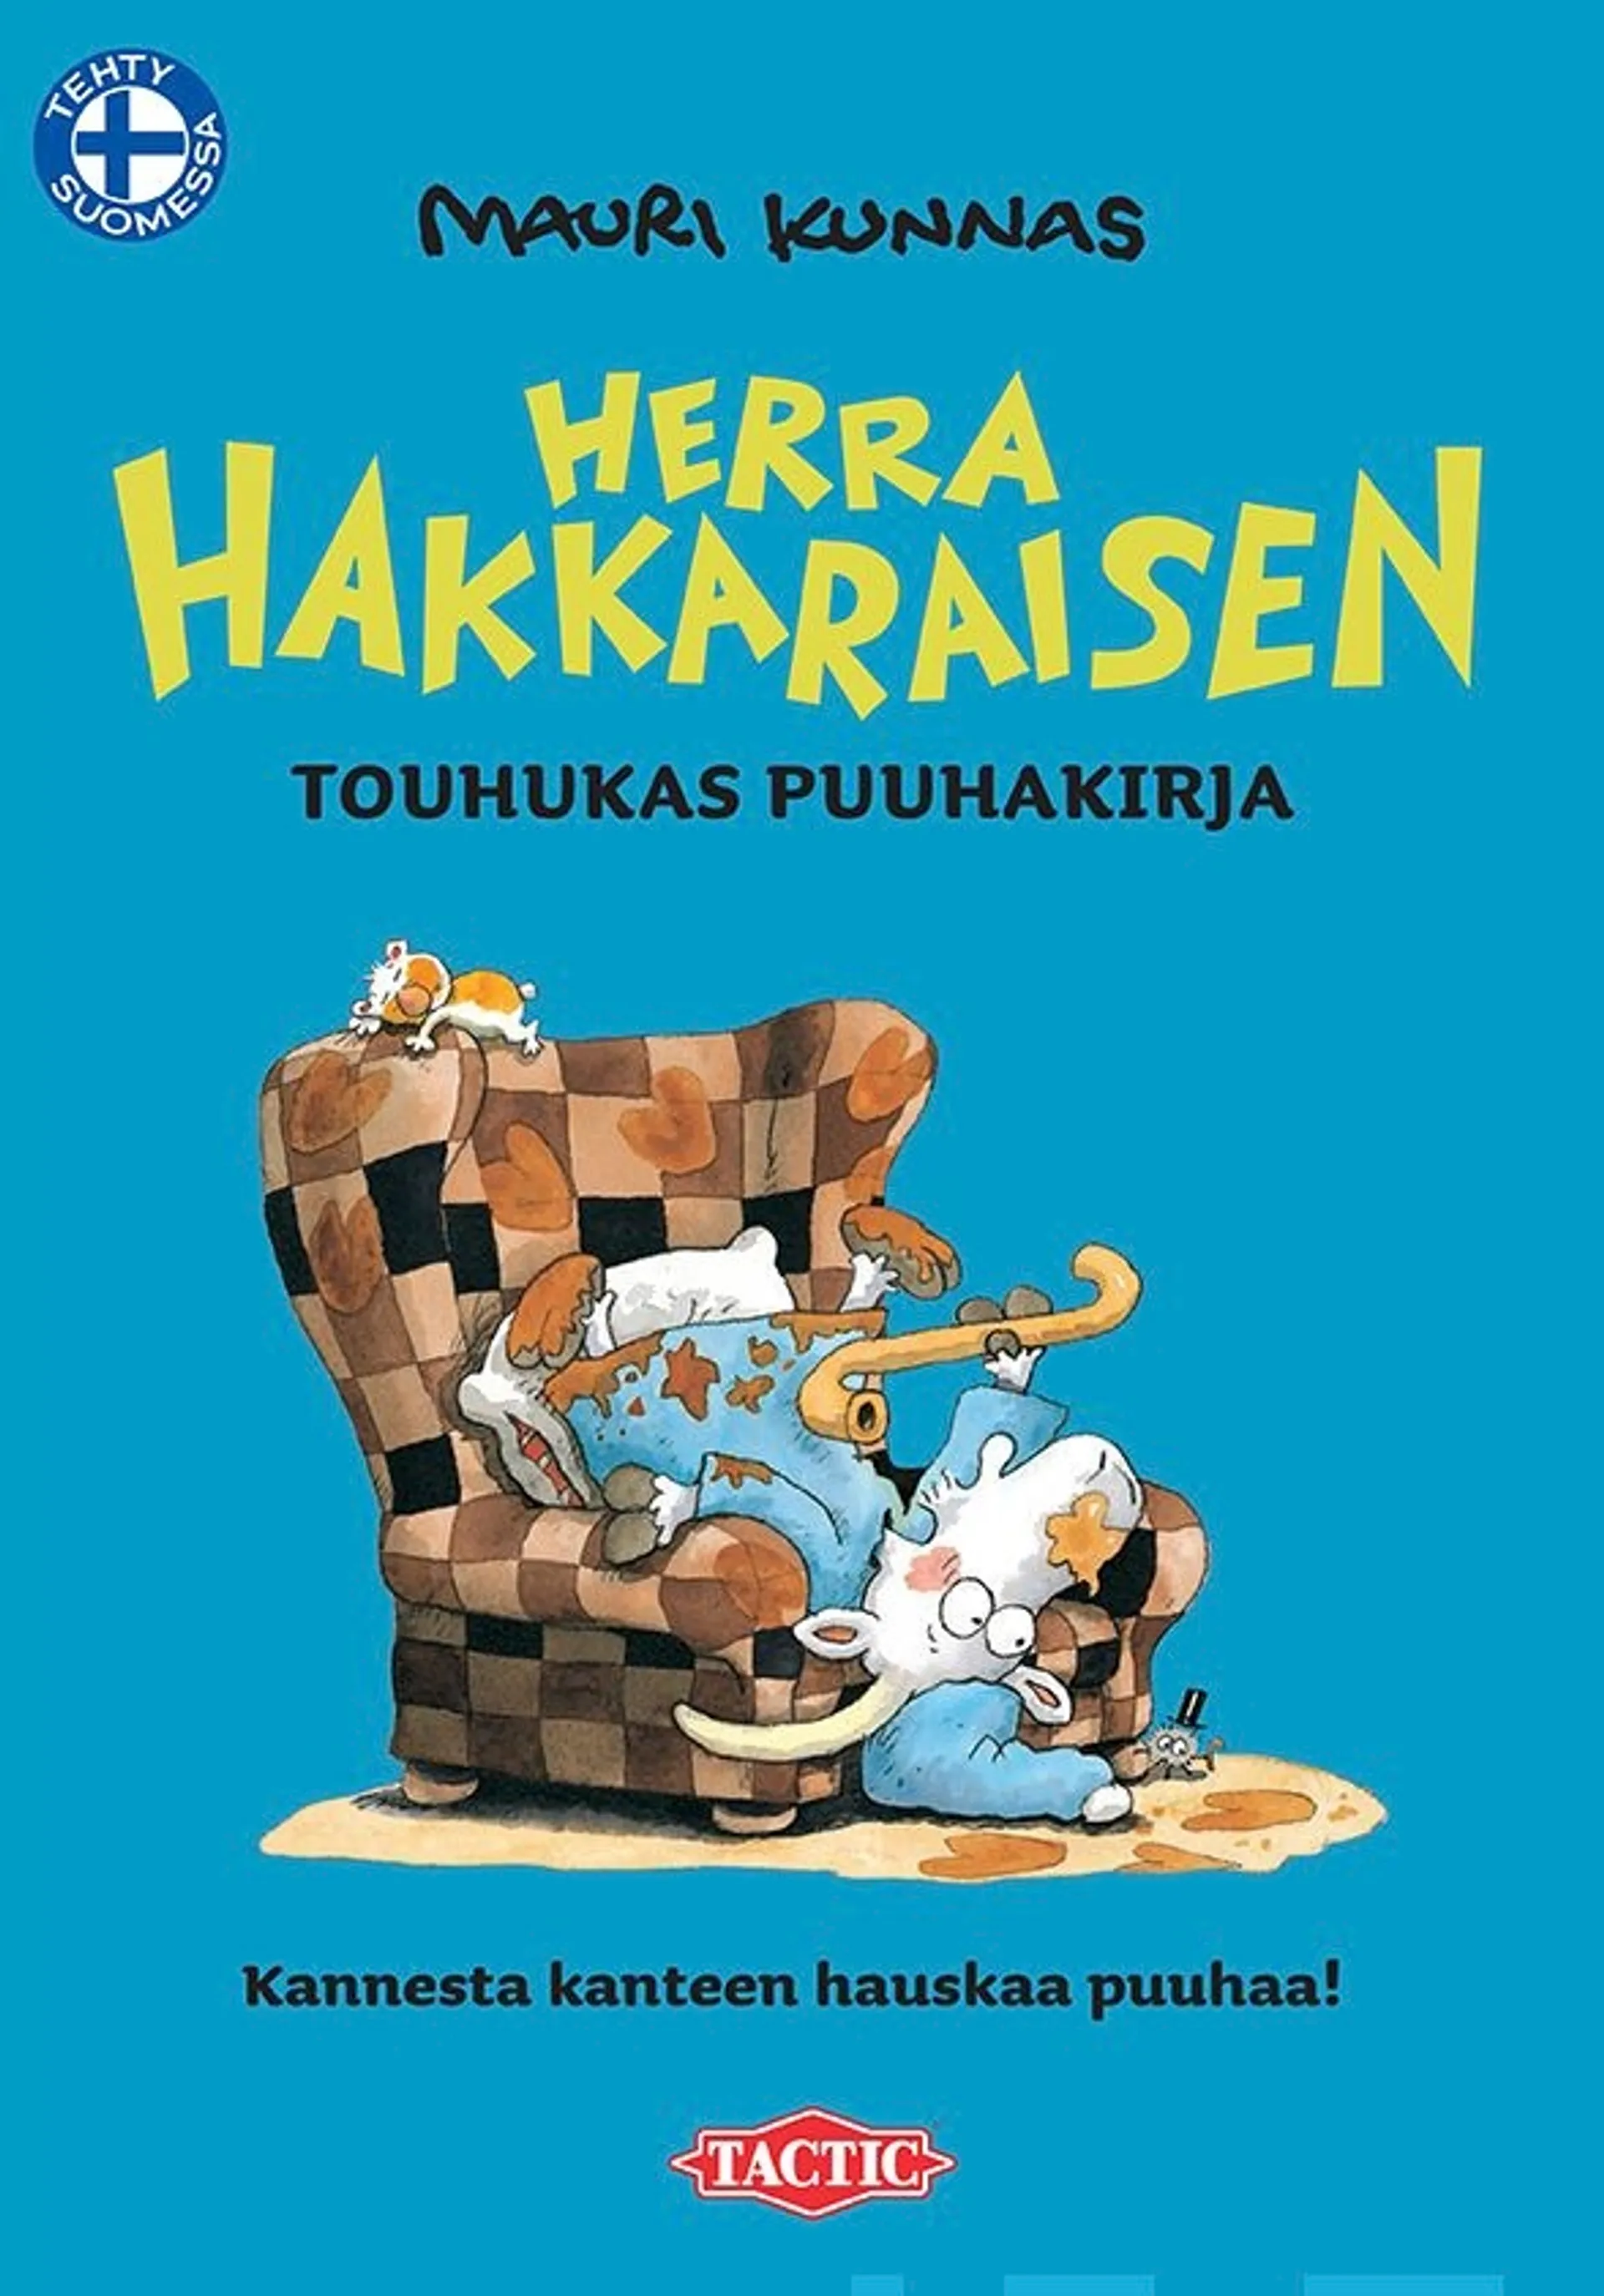 Korpela, Herra Hakkaraisen touhukas puuhakirja - 48 sivua hauskaa puuhaa!